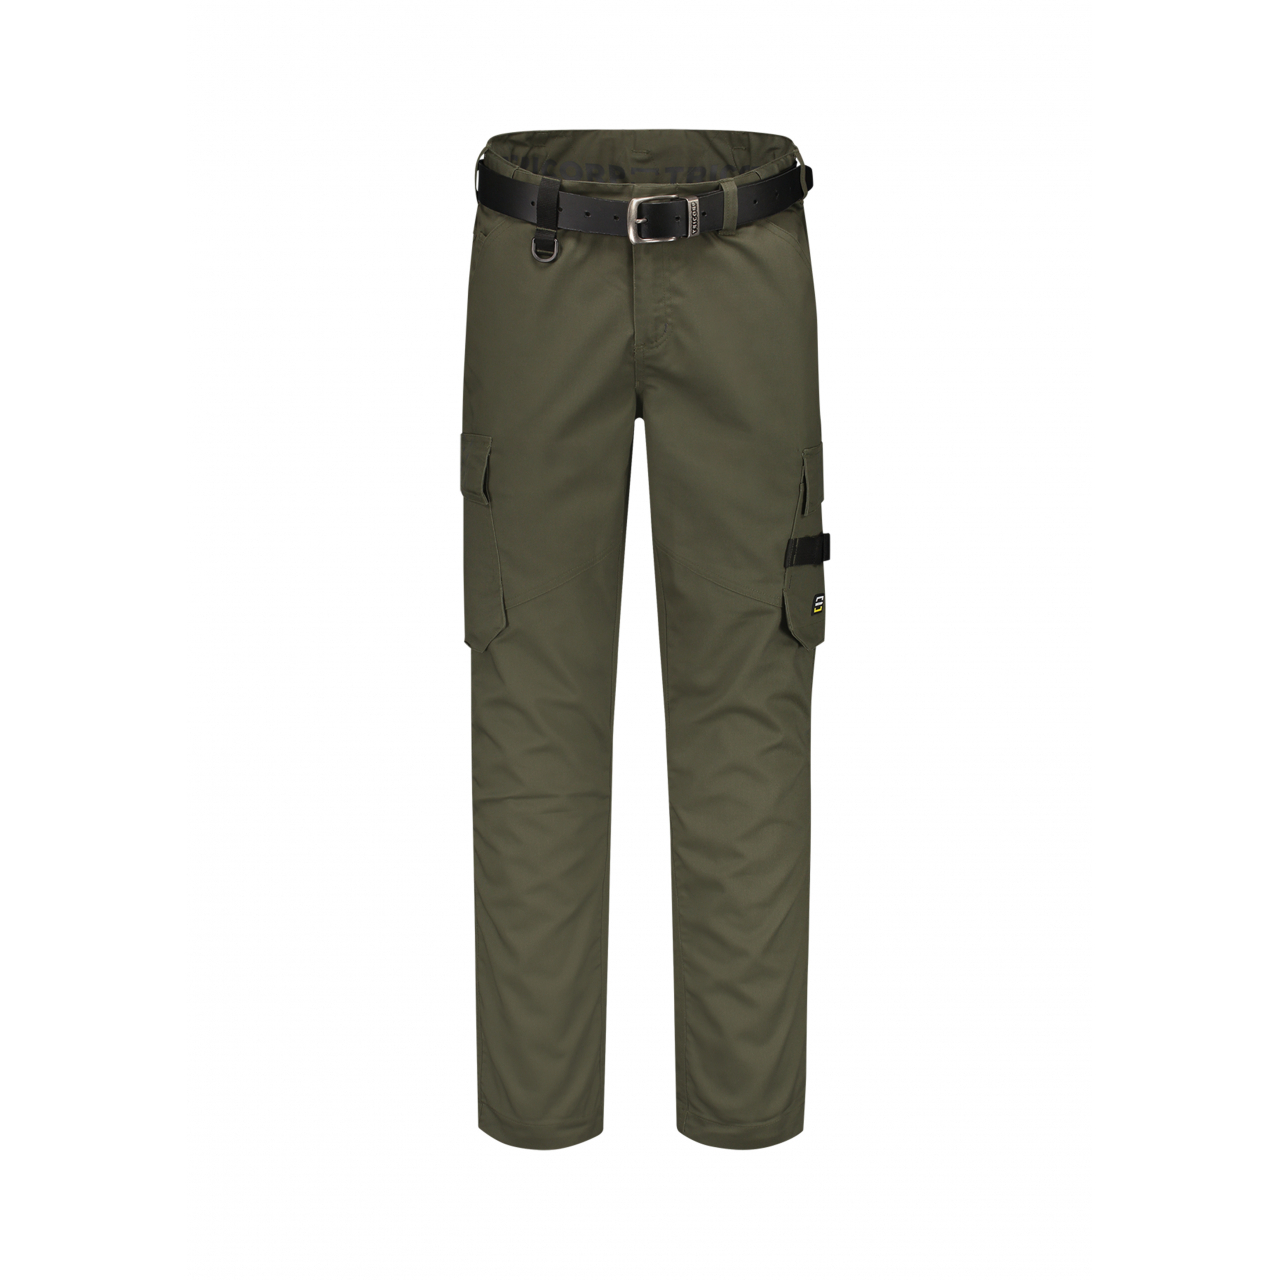 Pracovní kalhoty unisex Tricorp Work Pants Twill - olivové, 45